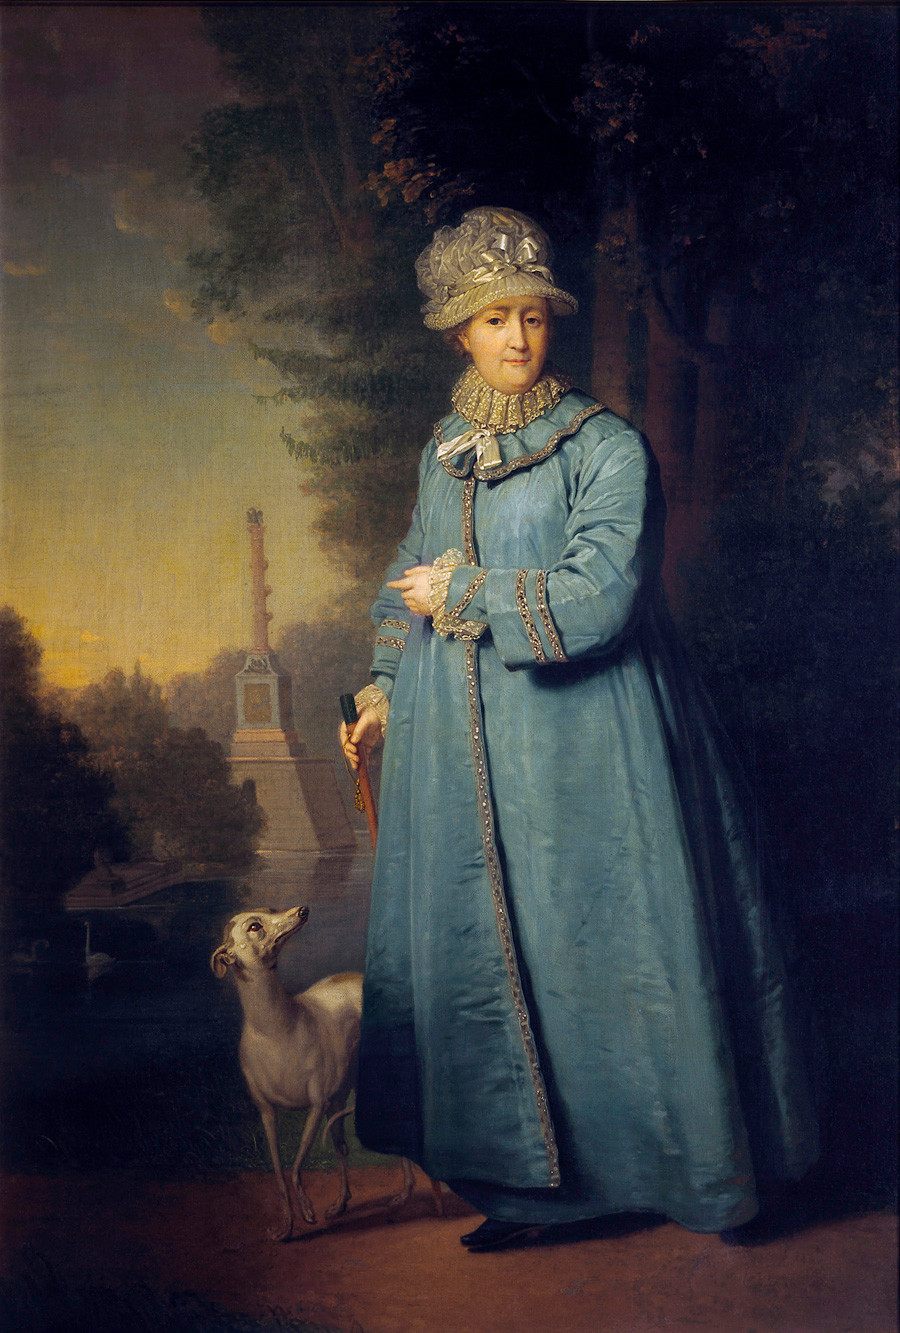 'Catherine the Great walking in Tsarskoye Selo Park' by Vladimir Borovikovsky, 1794